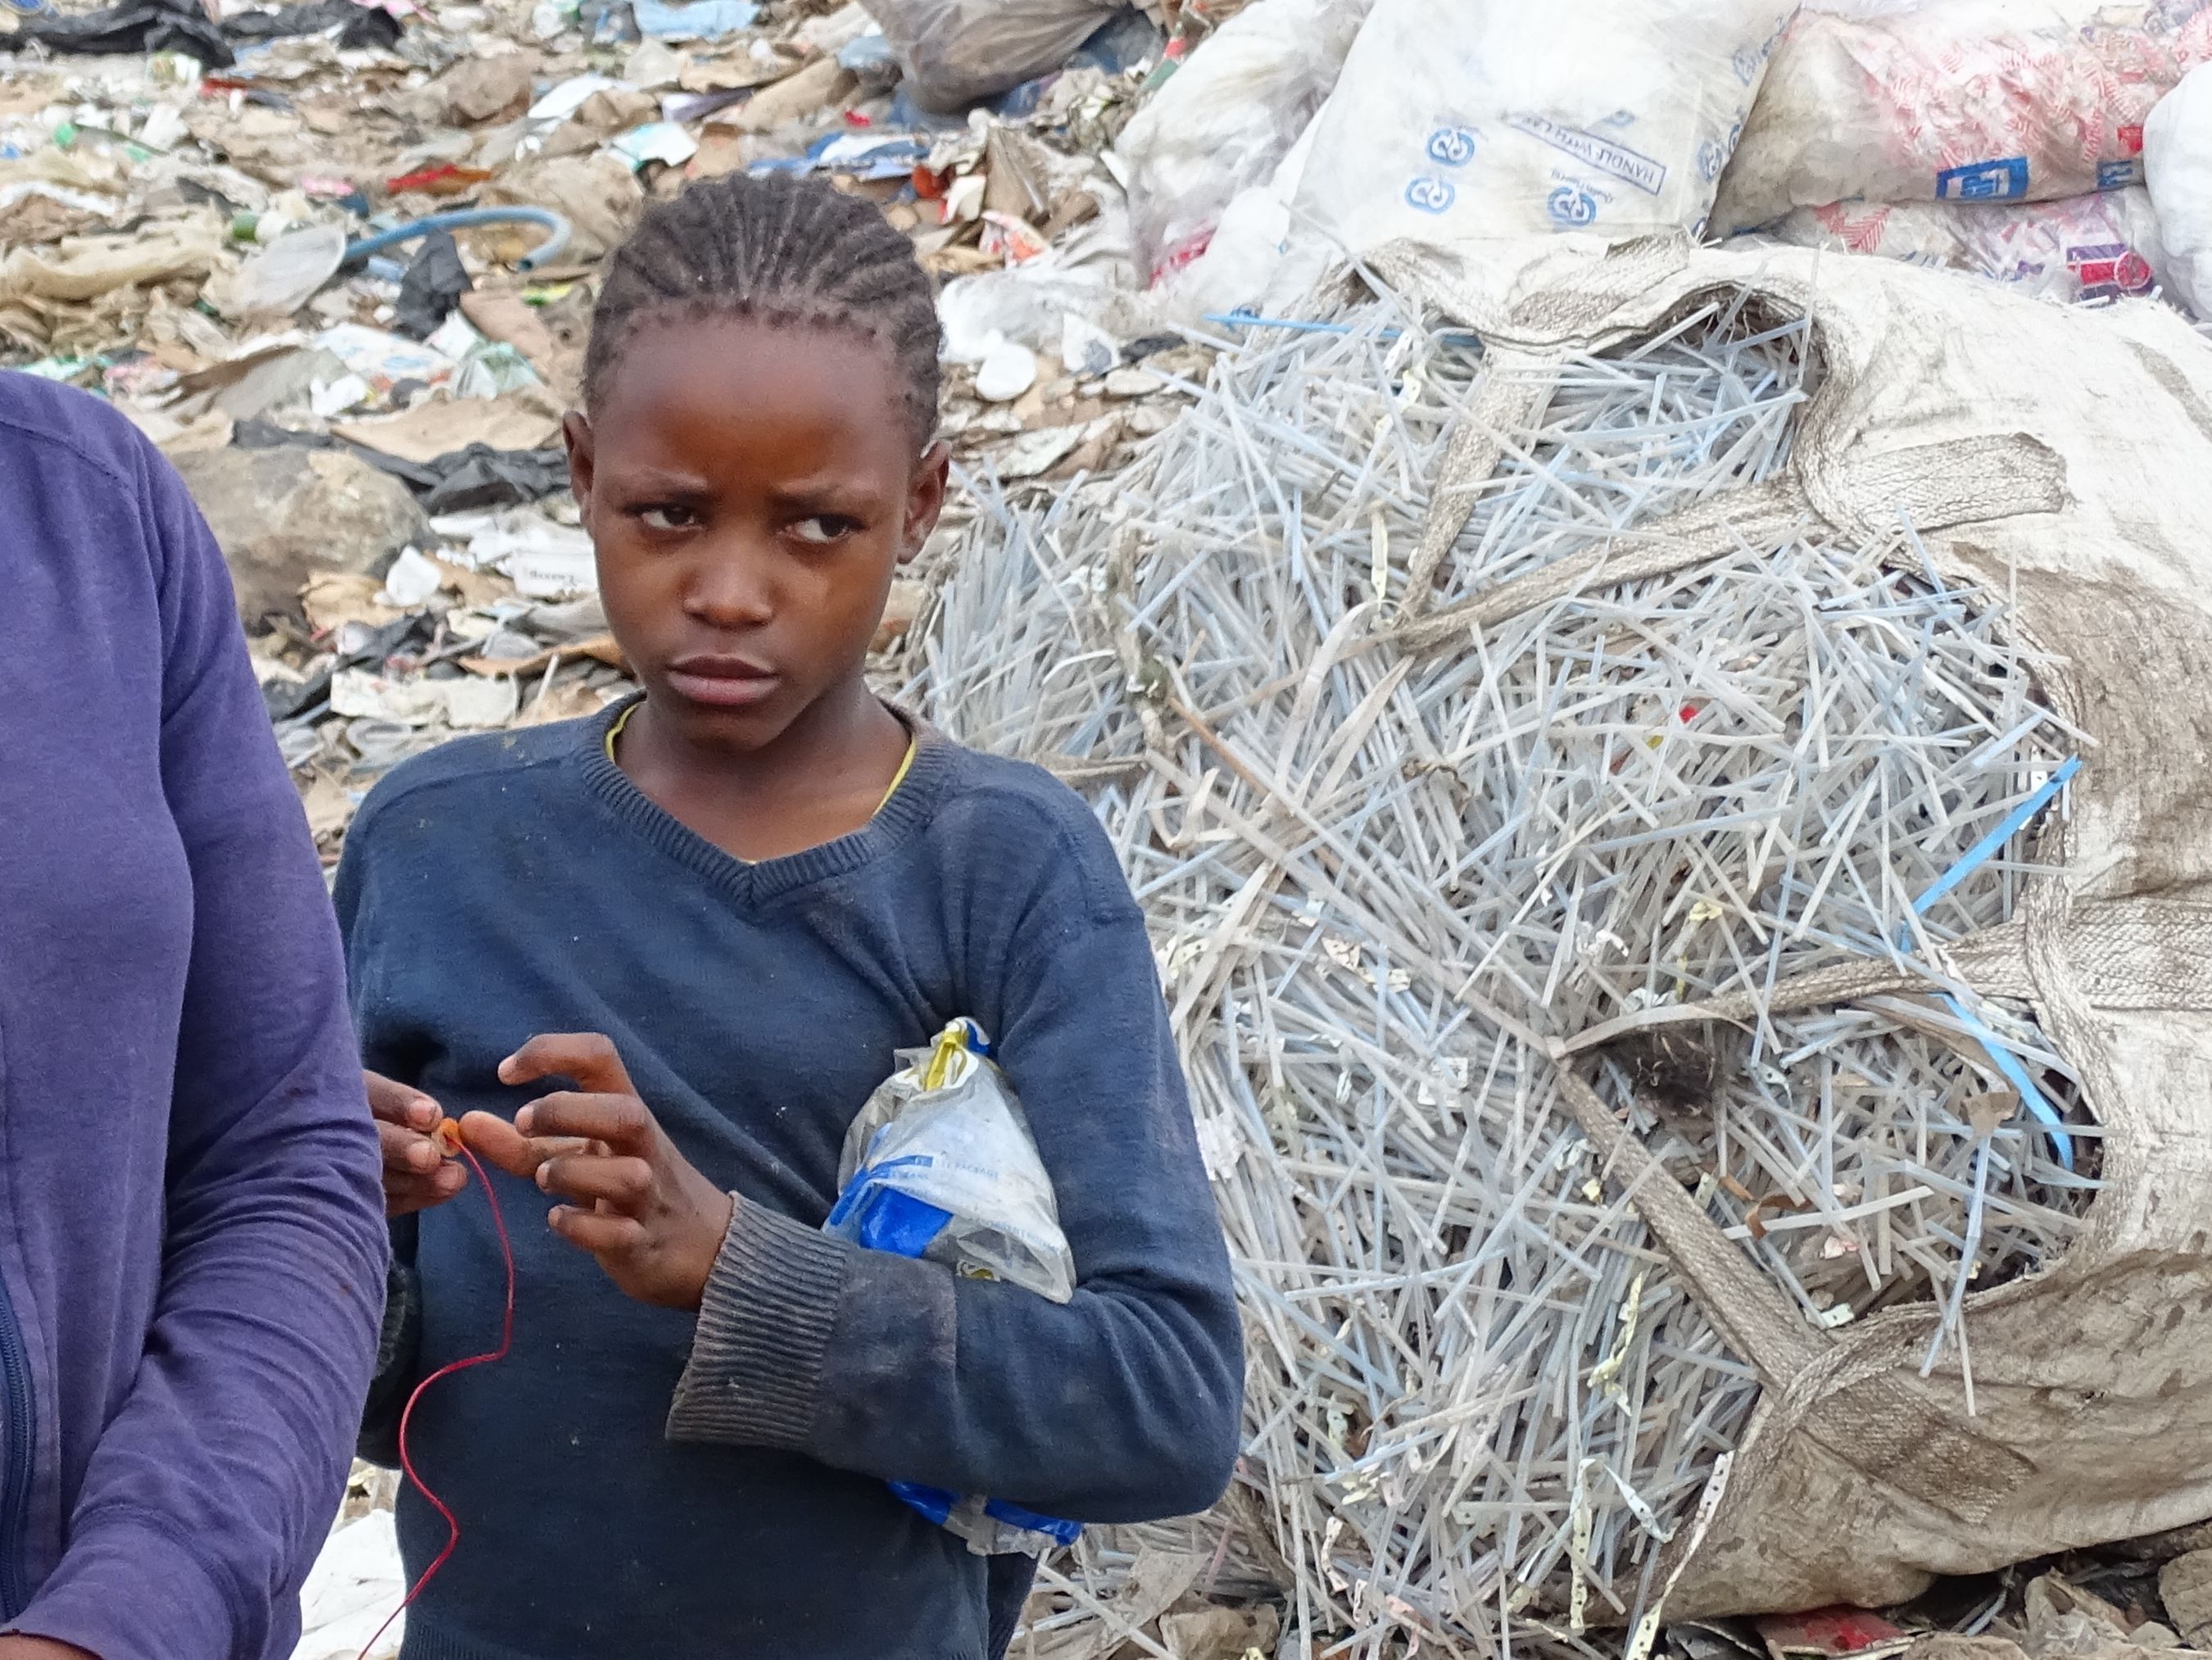 Michelle steht mit ihrer Mutter vor einem riesigen Müllberg.